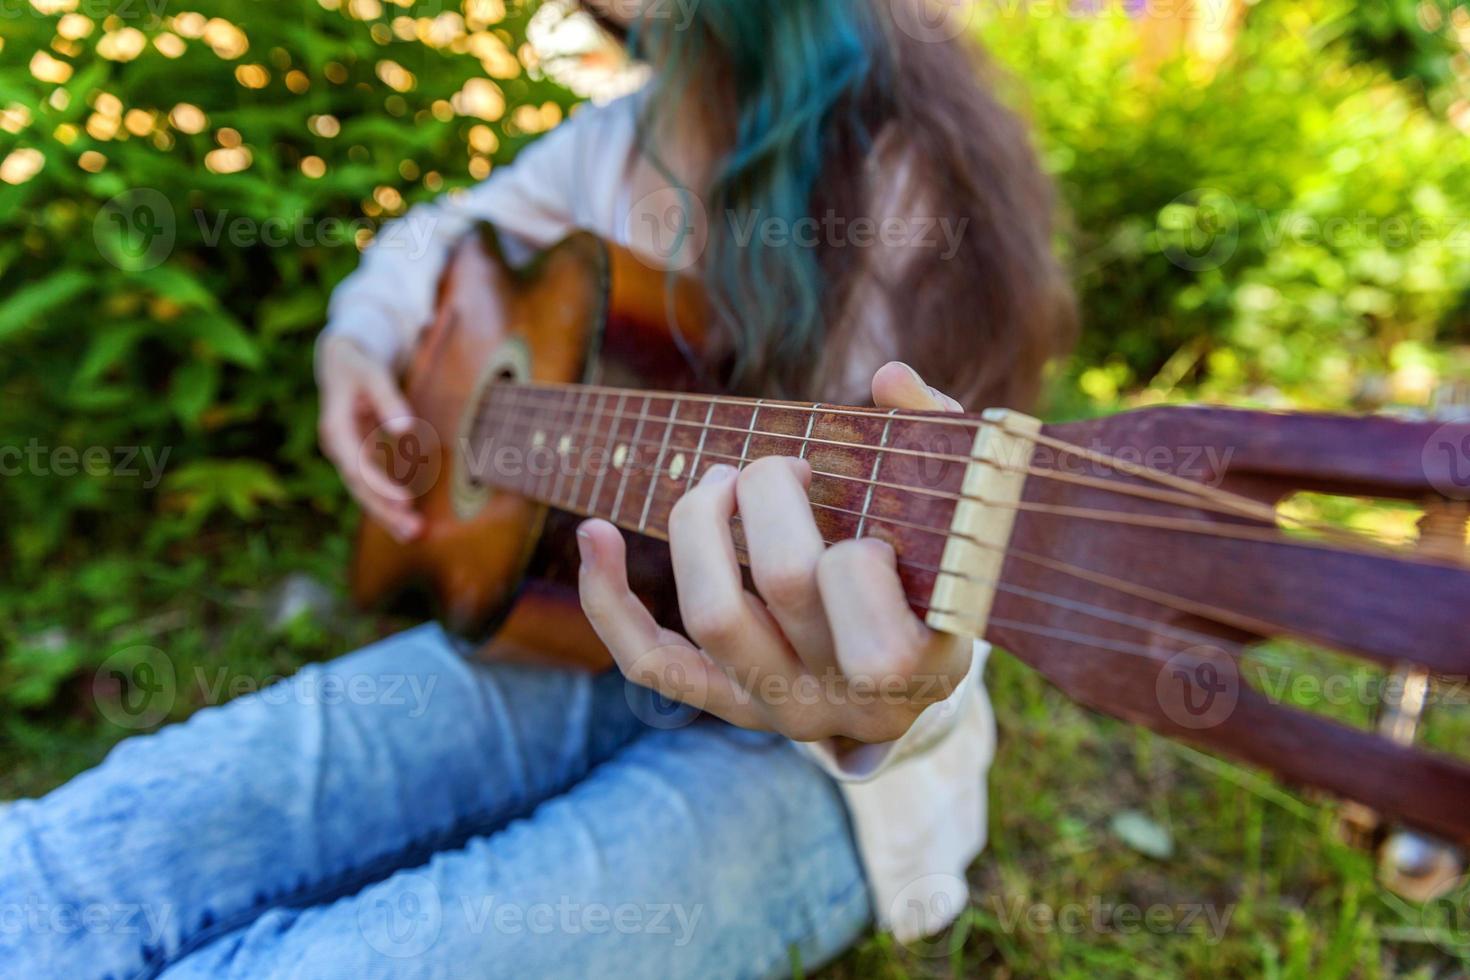 manos de mujer tocando la guitarra acustica foto